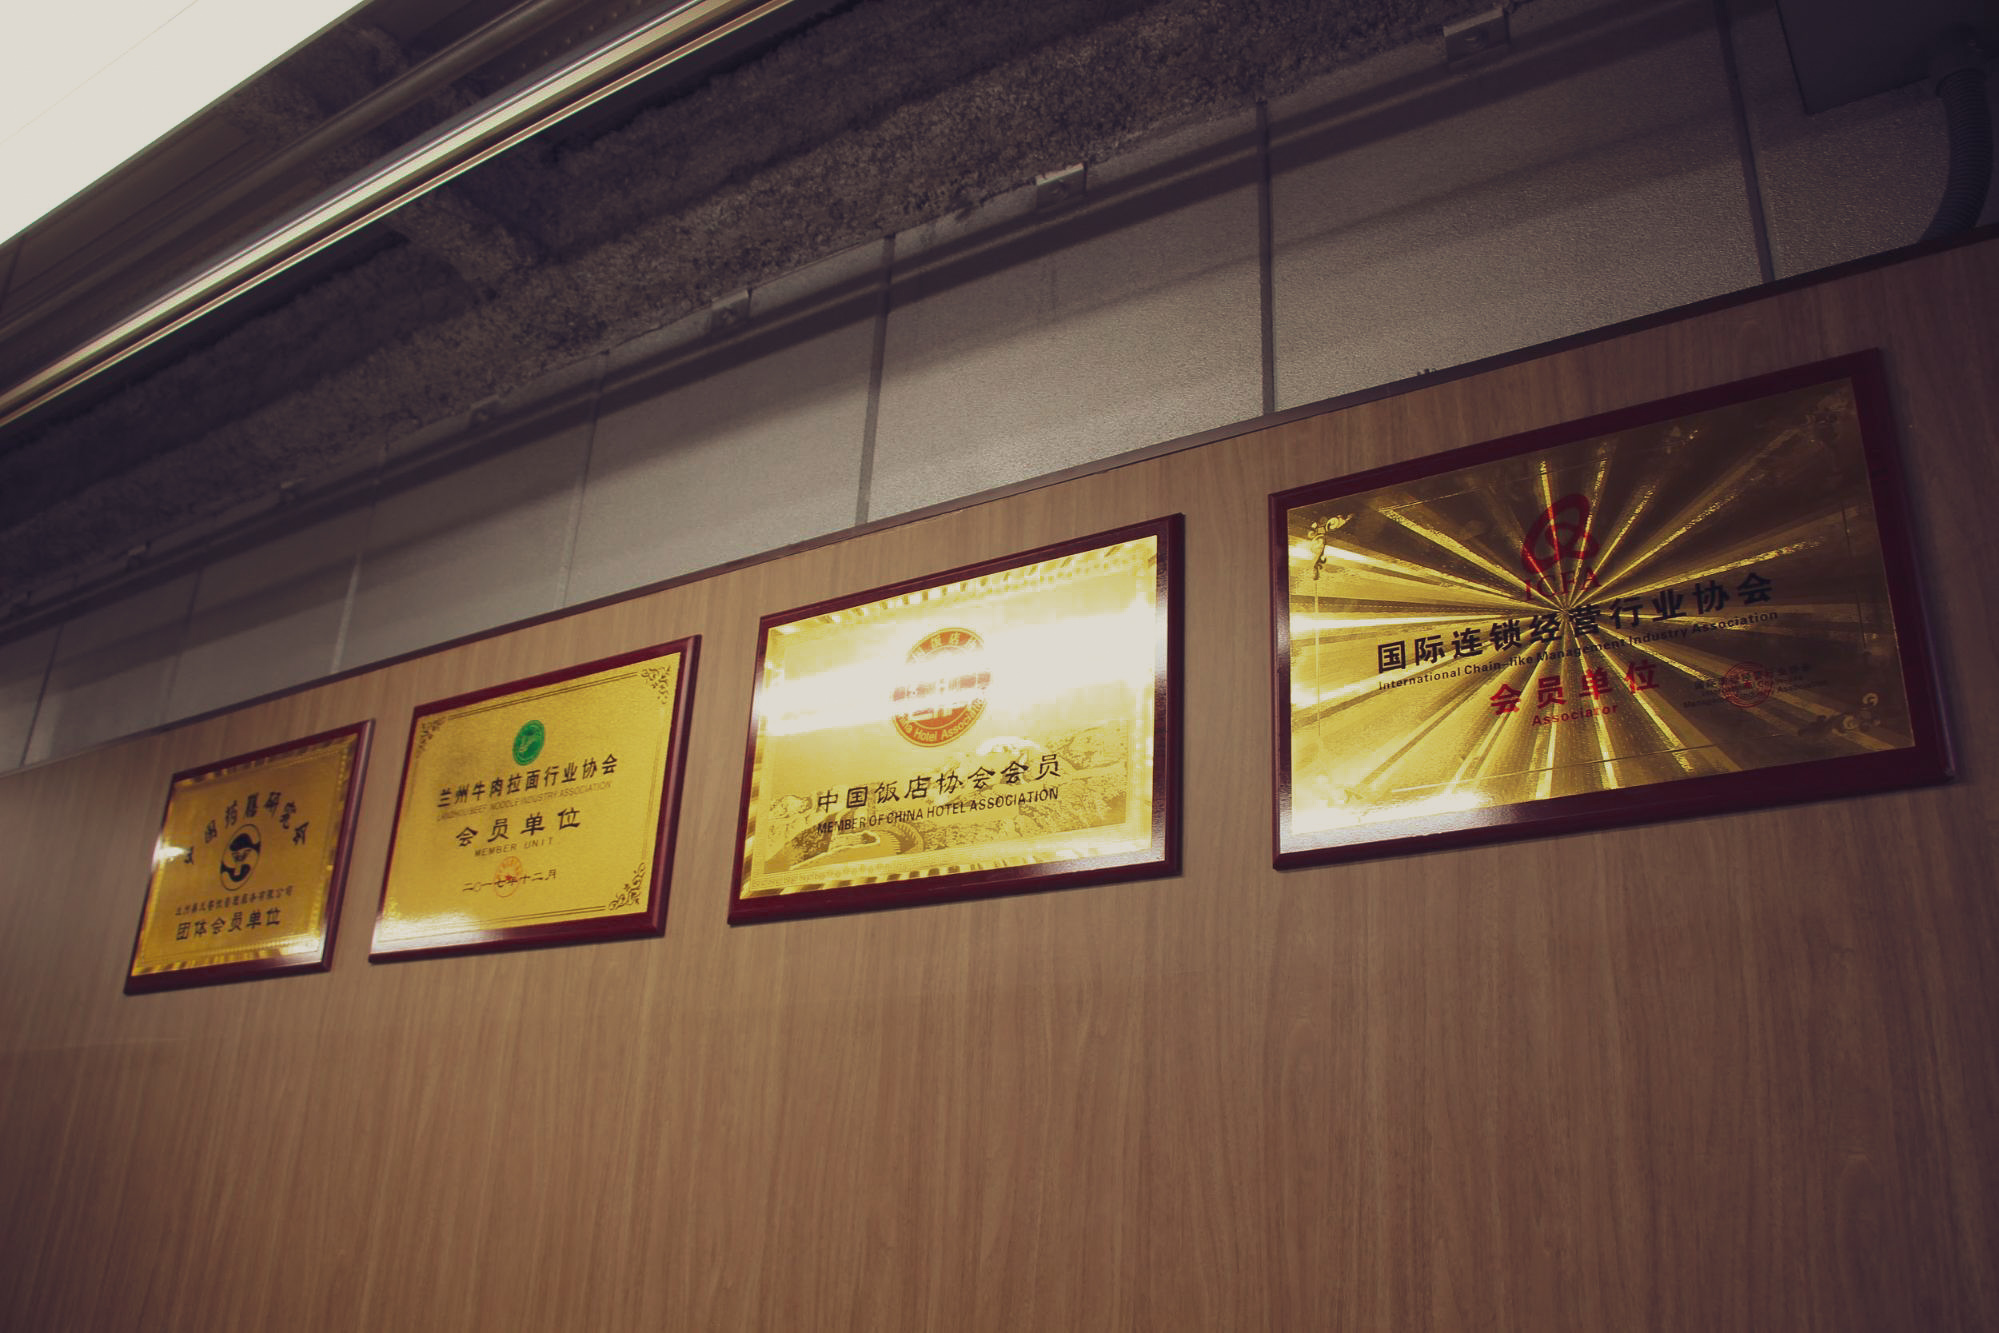 壁には過去に受賞した数々の賞状が飾られています。